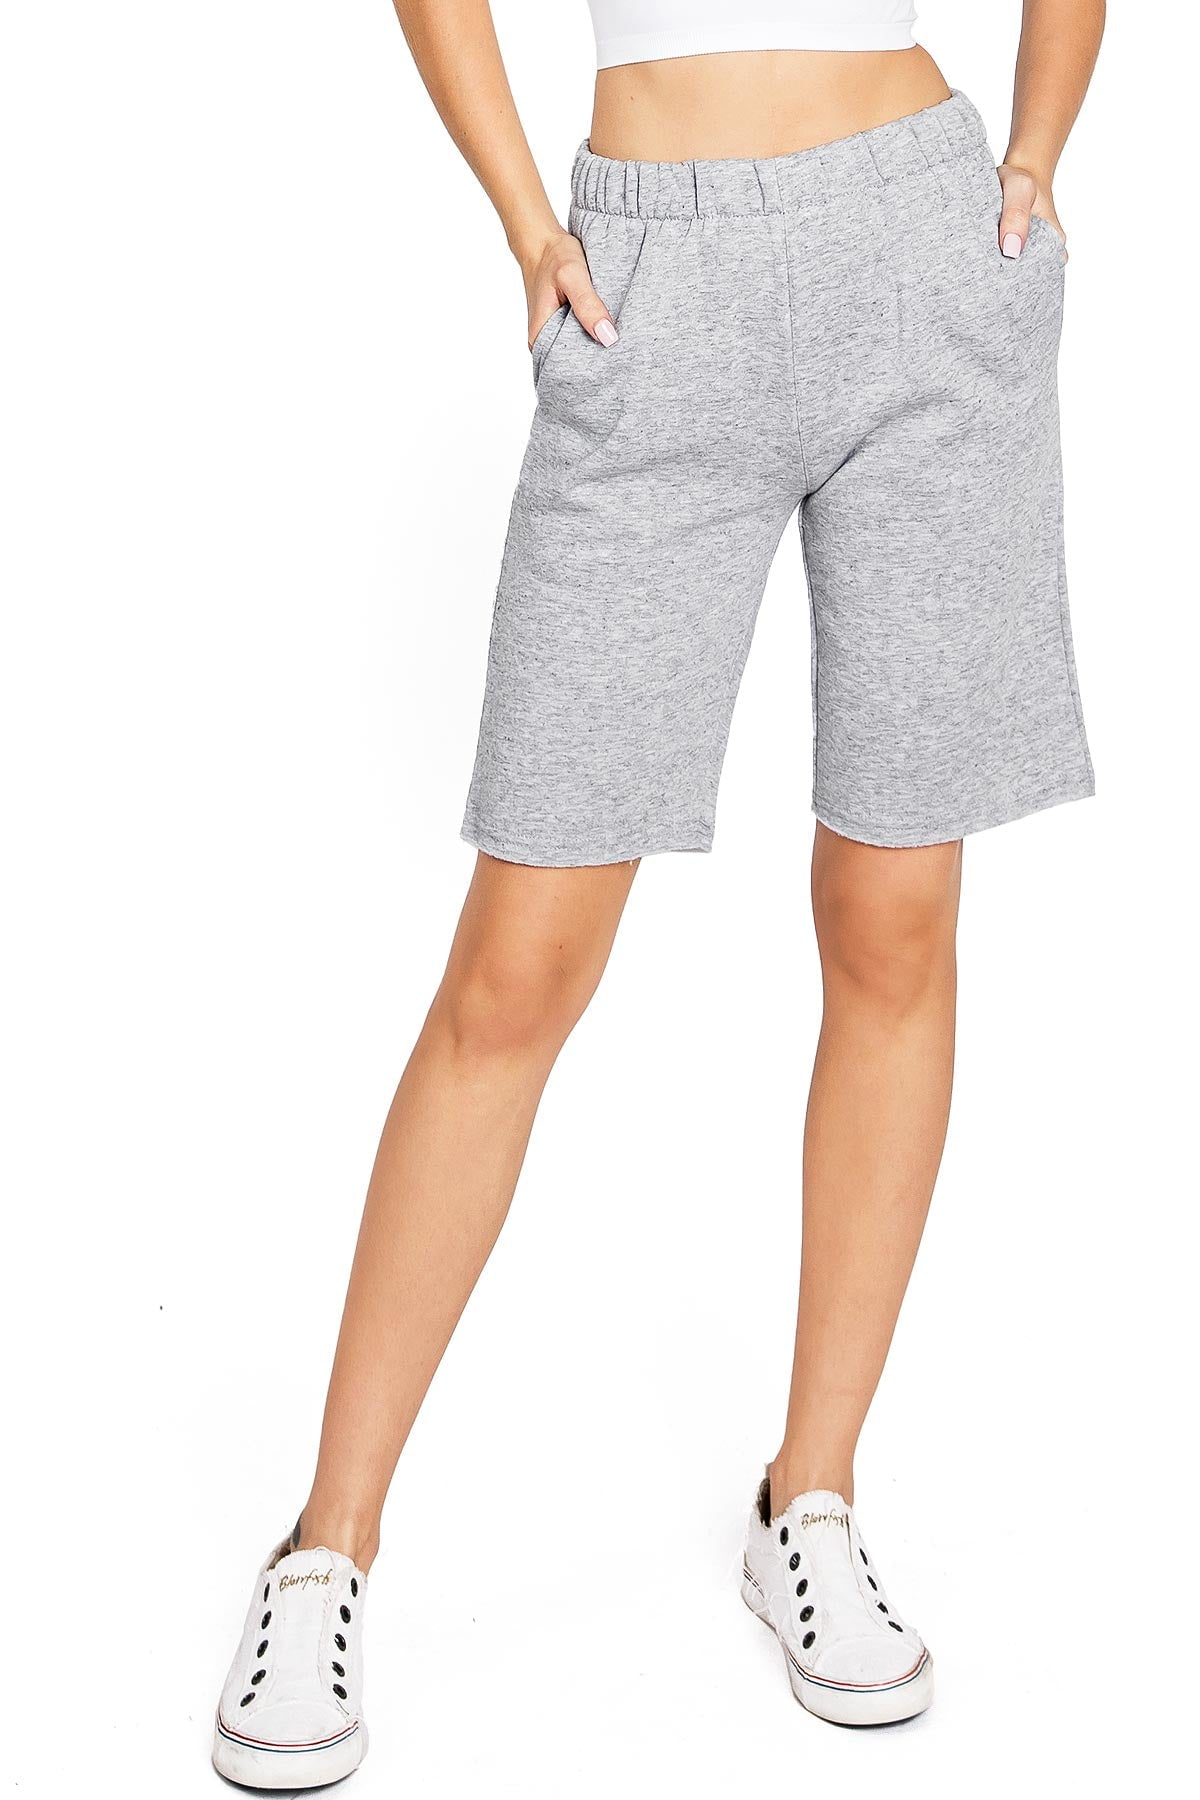 Reflex Womens Juniors Athleisure High Rise Fleece Lined Shorts (Heather  Grey, XL) 